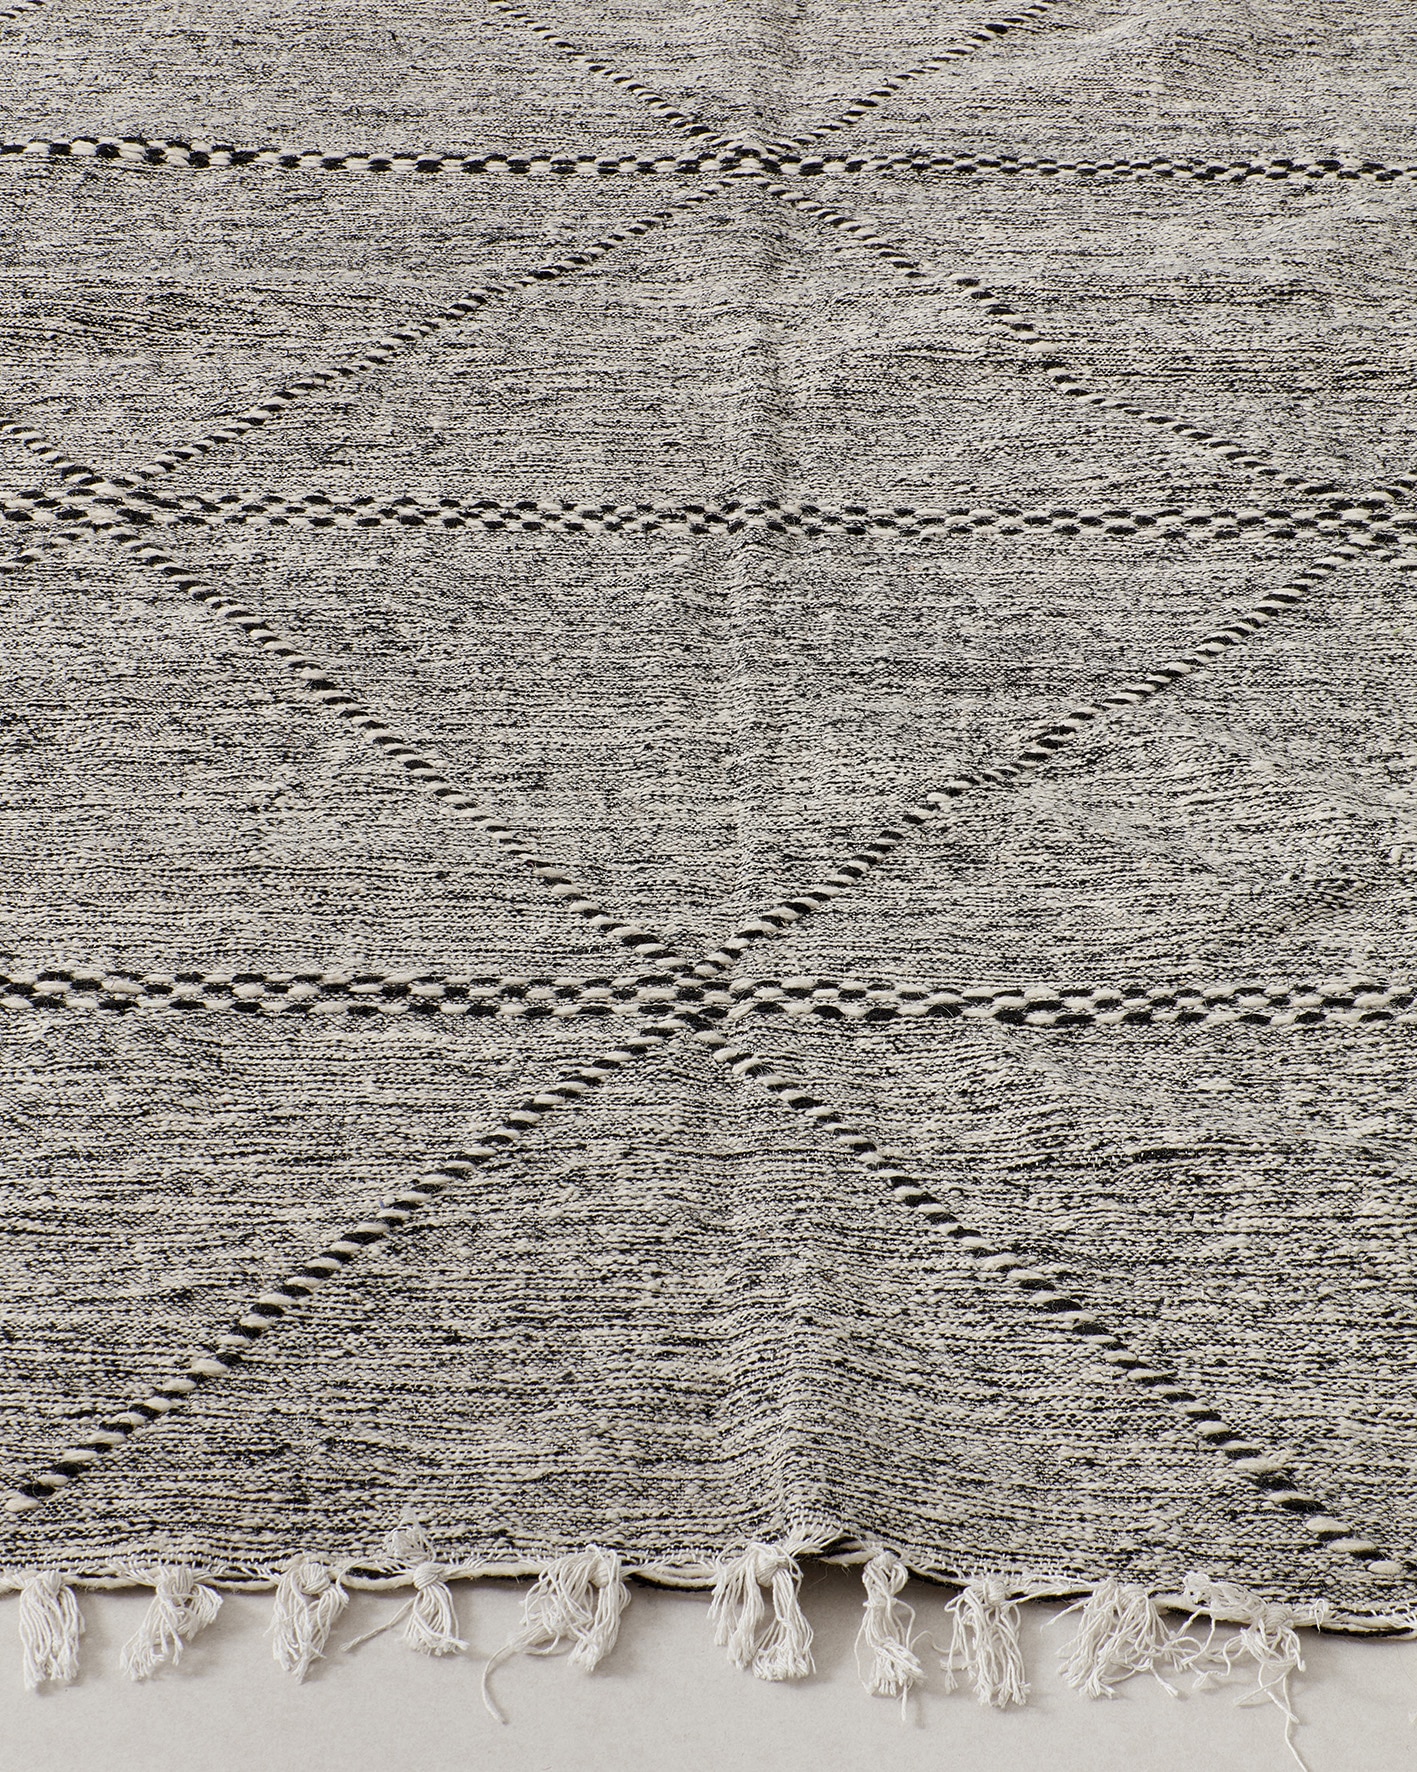 Óriás Zanafi szőnyeg, részlet